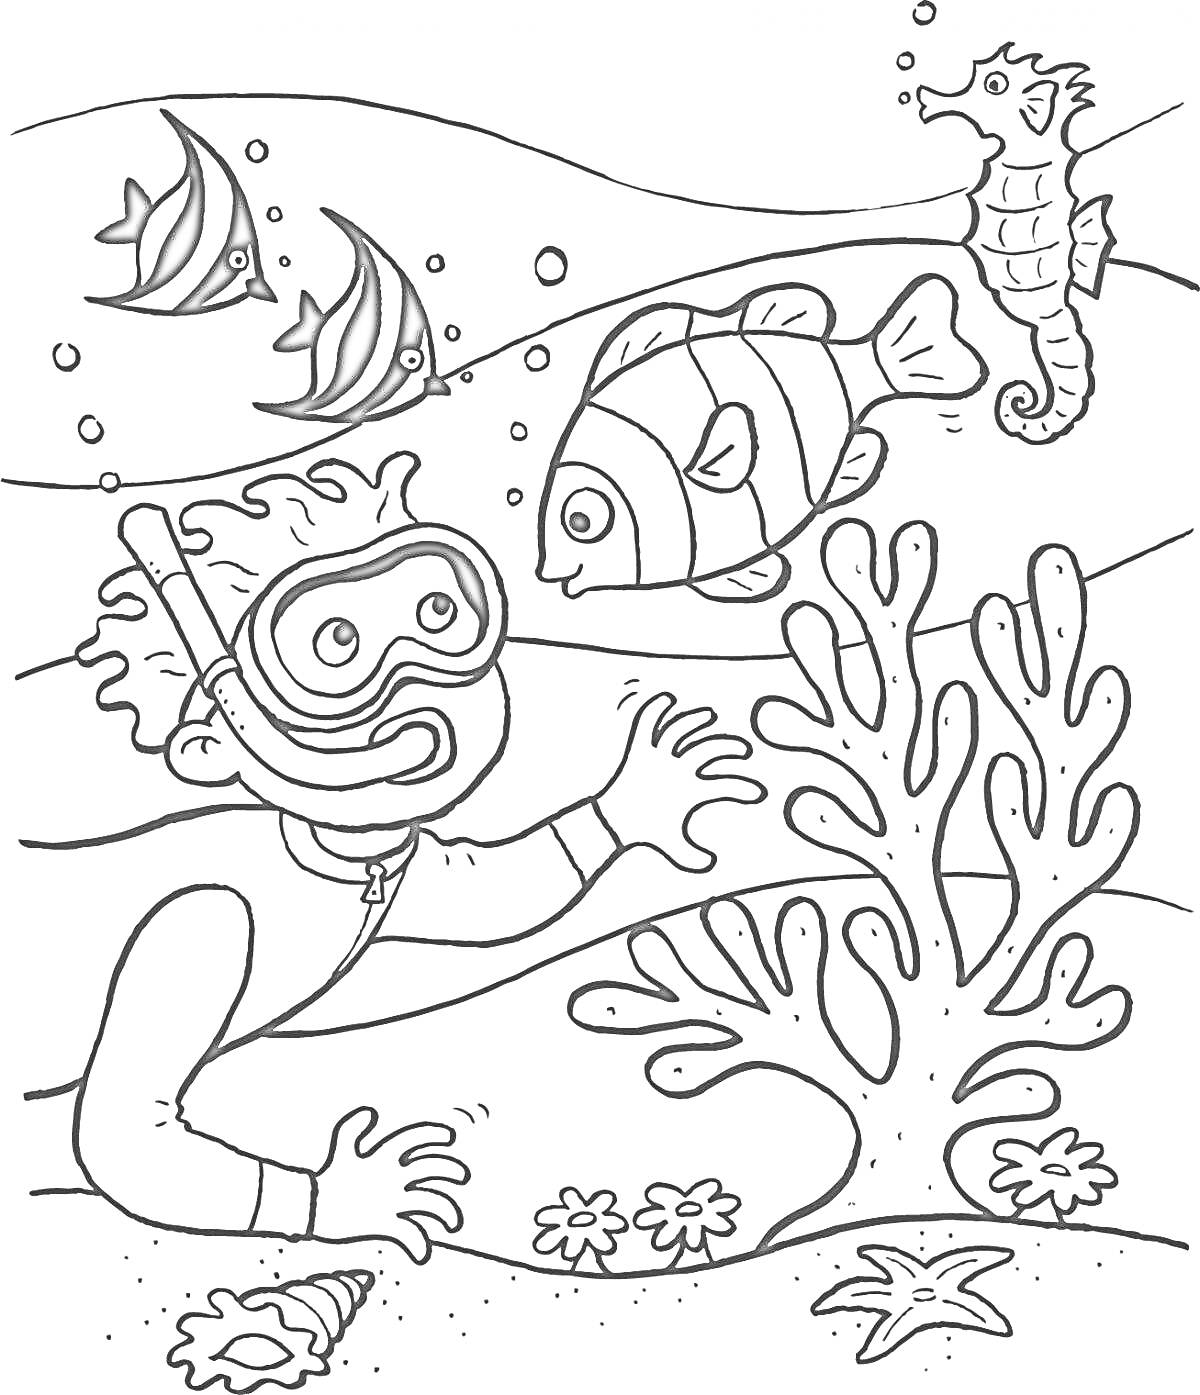 Раскраска Подводное приключение с мальчиком, рыбами, морским коньком, кораллами, ракушками и морской звездой